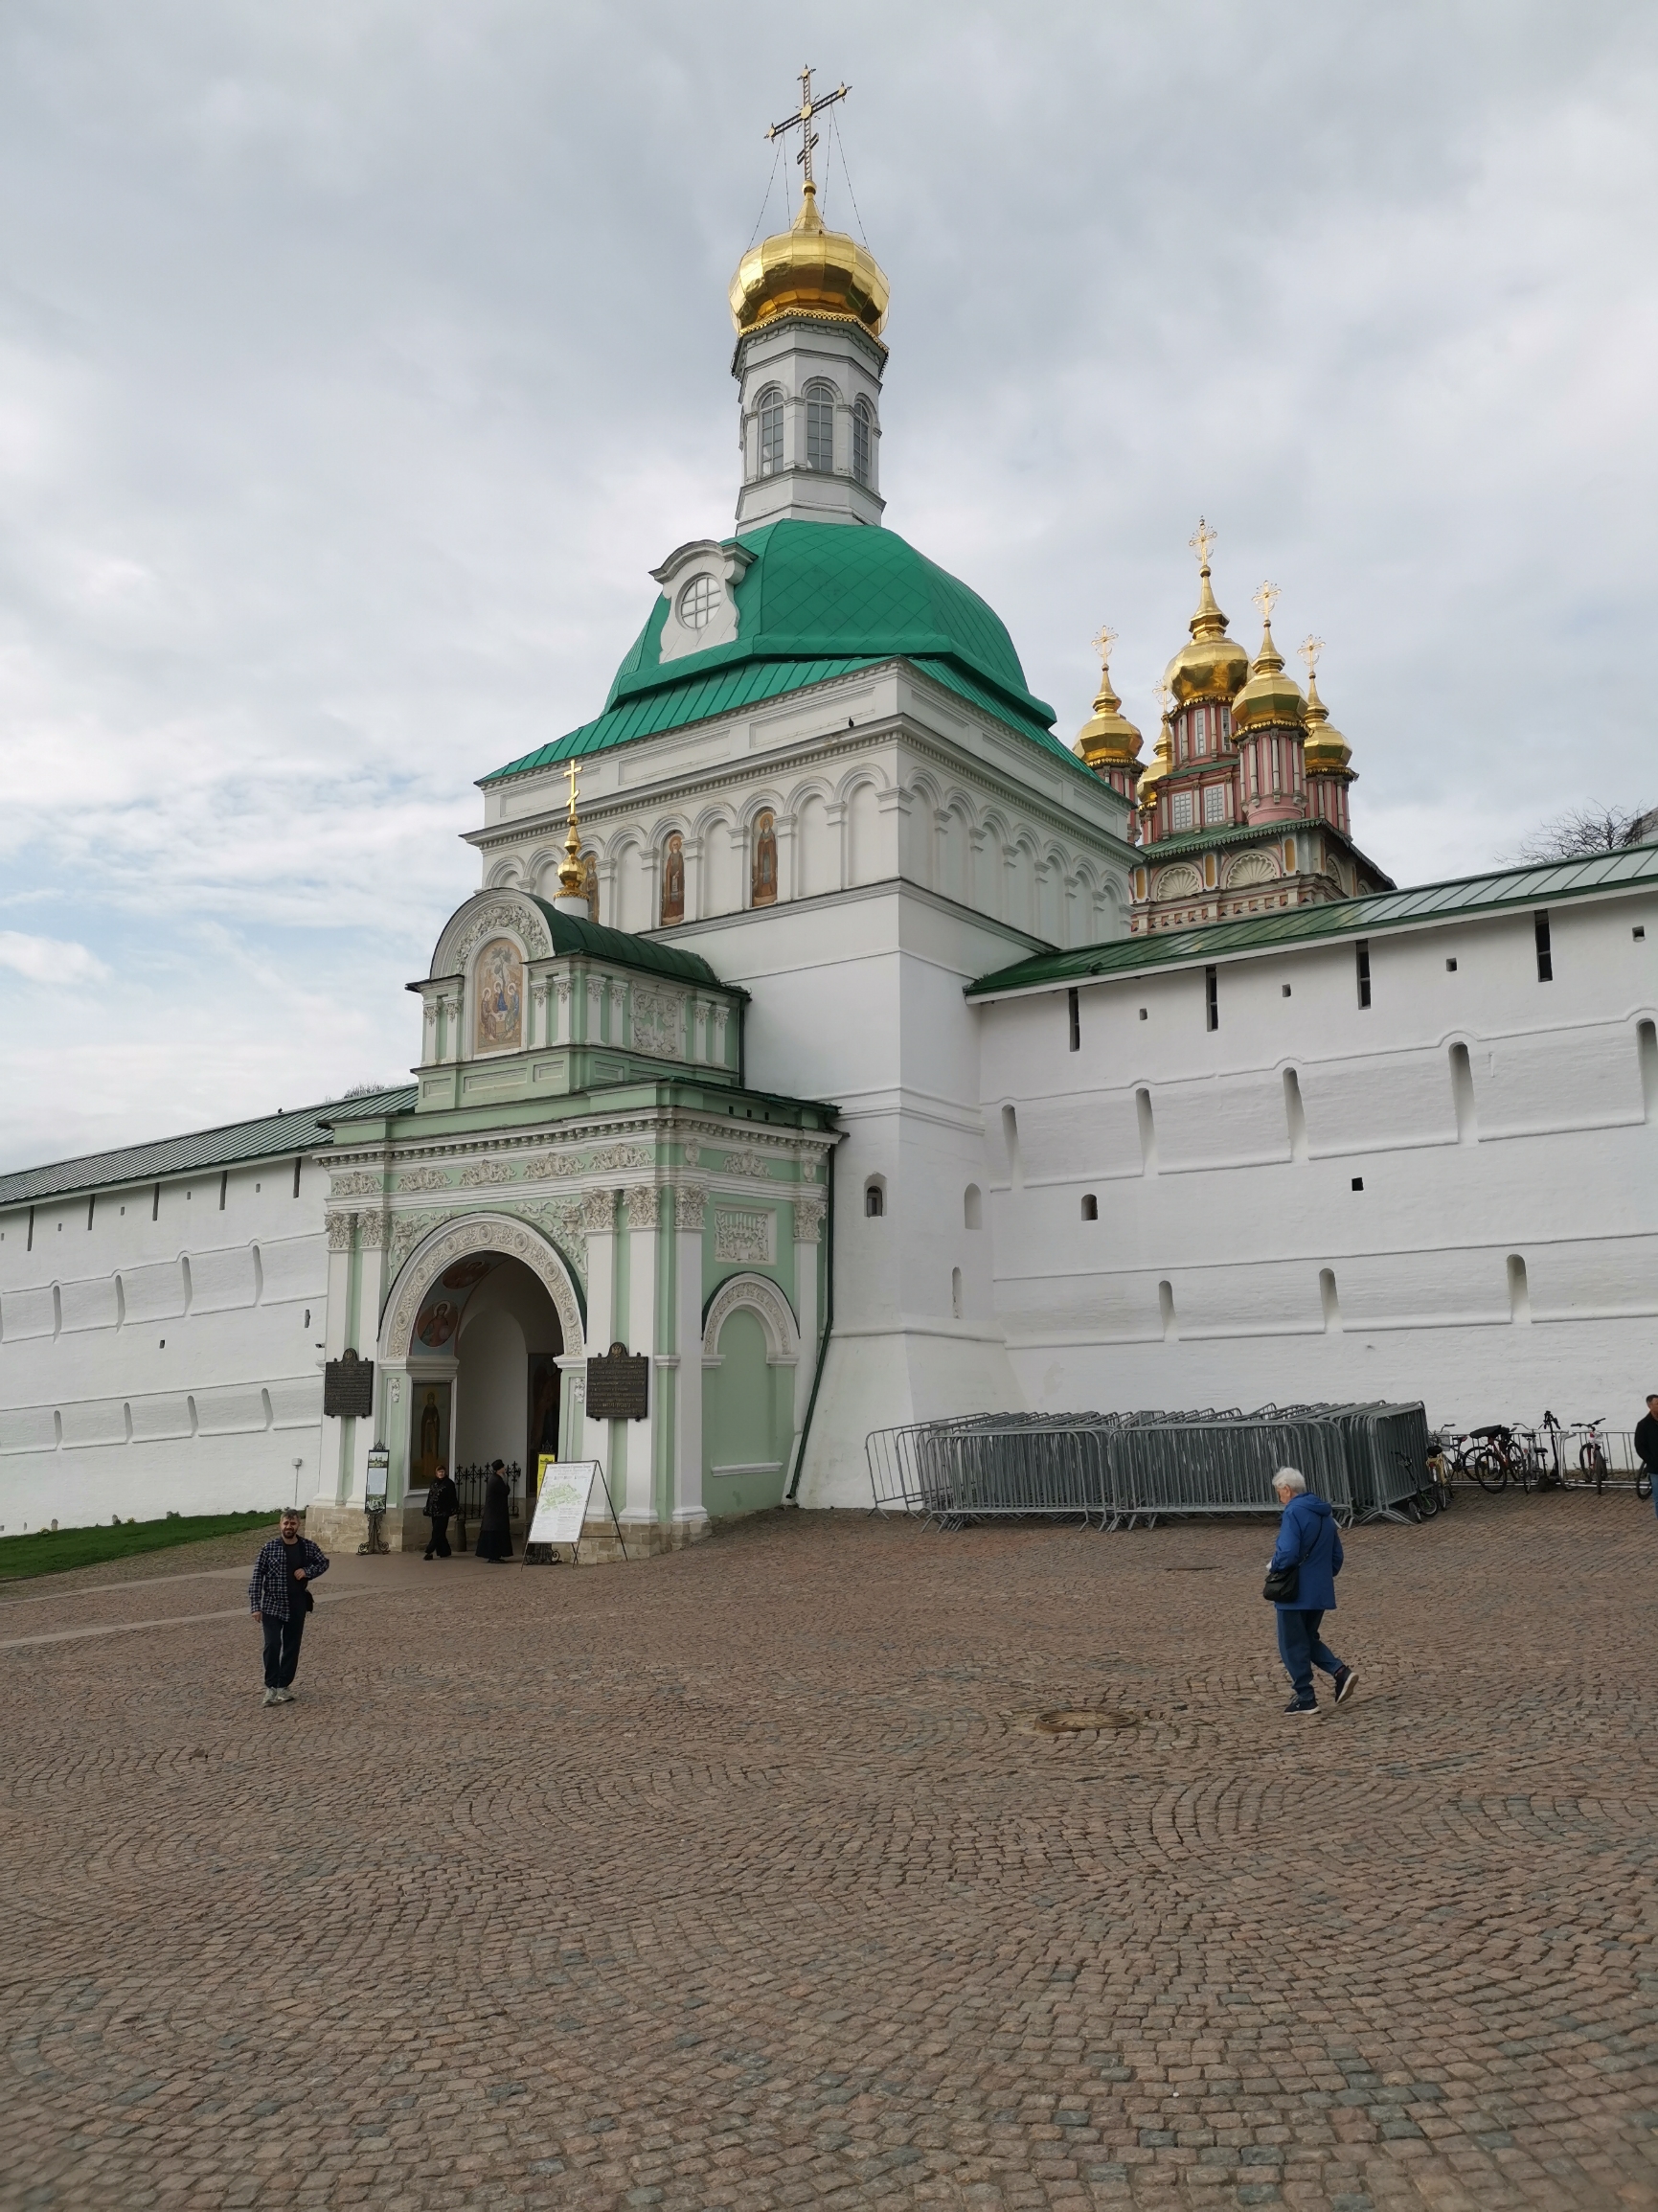 谢尔盖耶夫圣三一修道院，各式建筑群自然融为一体，可惜部分在修缮，影响的整体观感